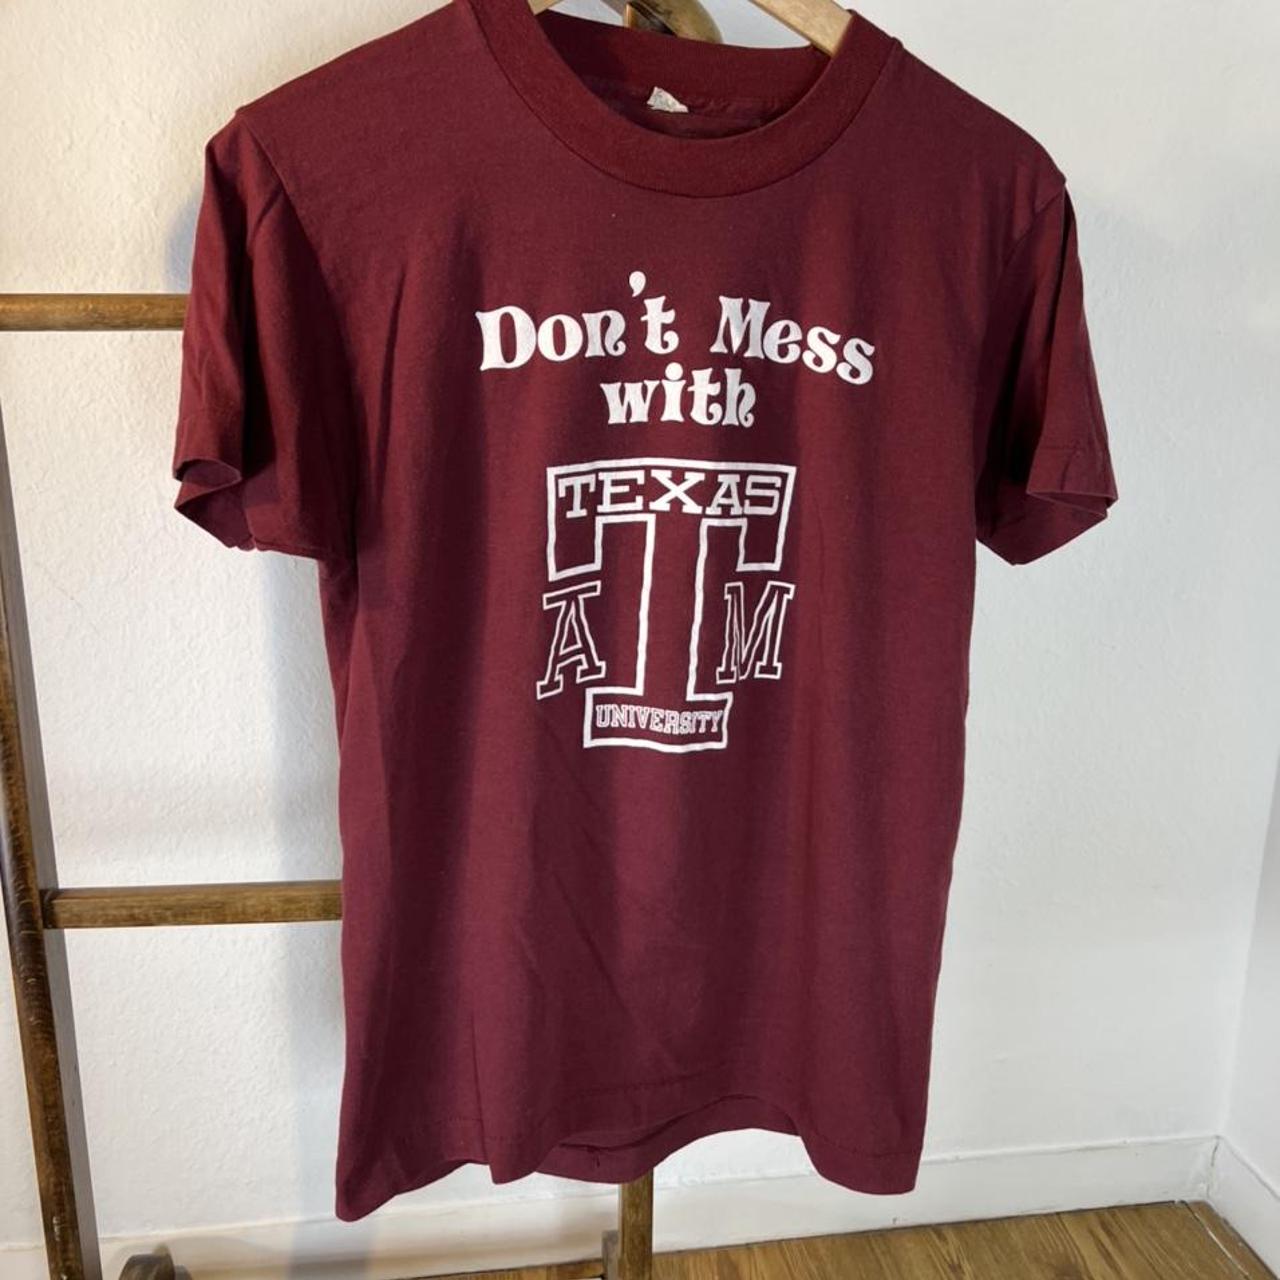 Texas A&M Aggies t-shirt 👍🏻 Tagged a small 💯% - Depop